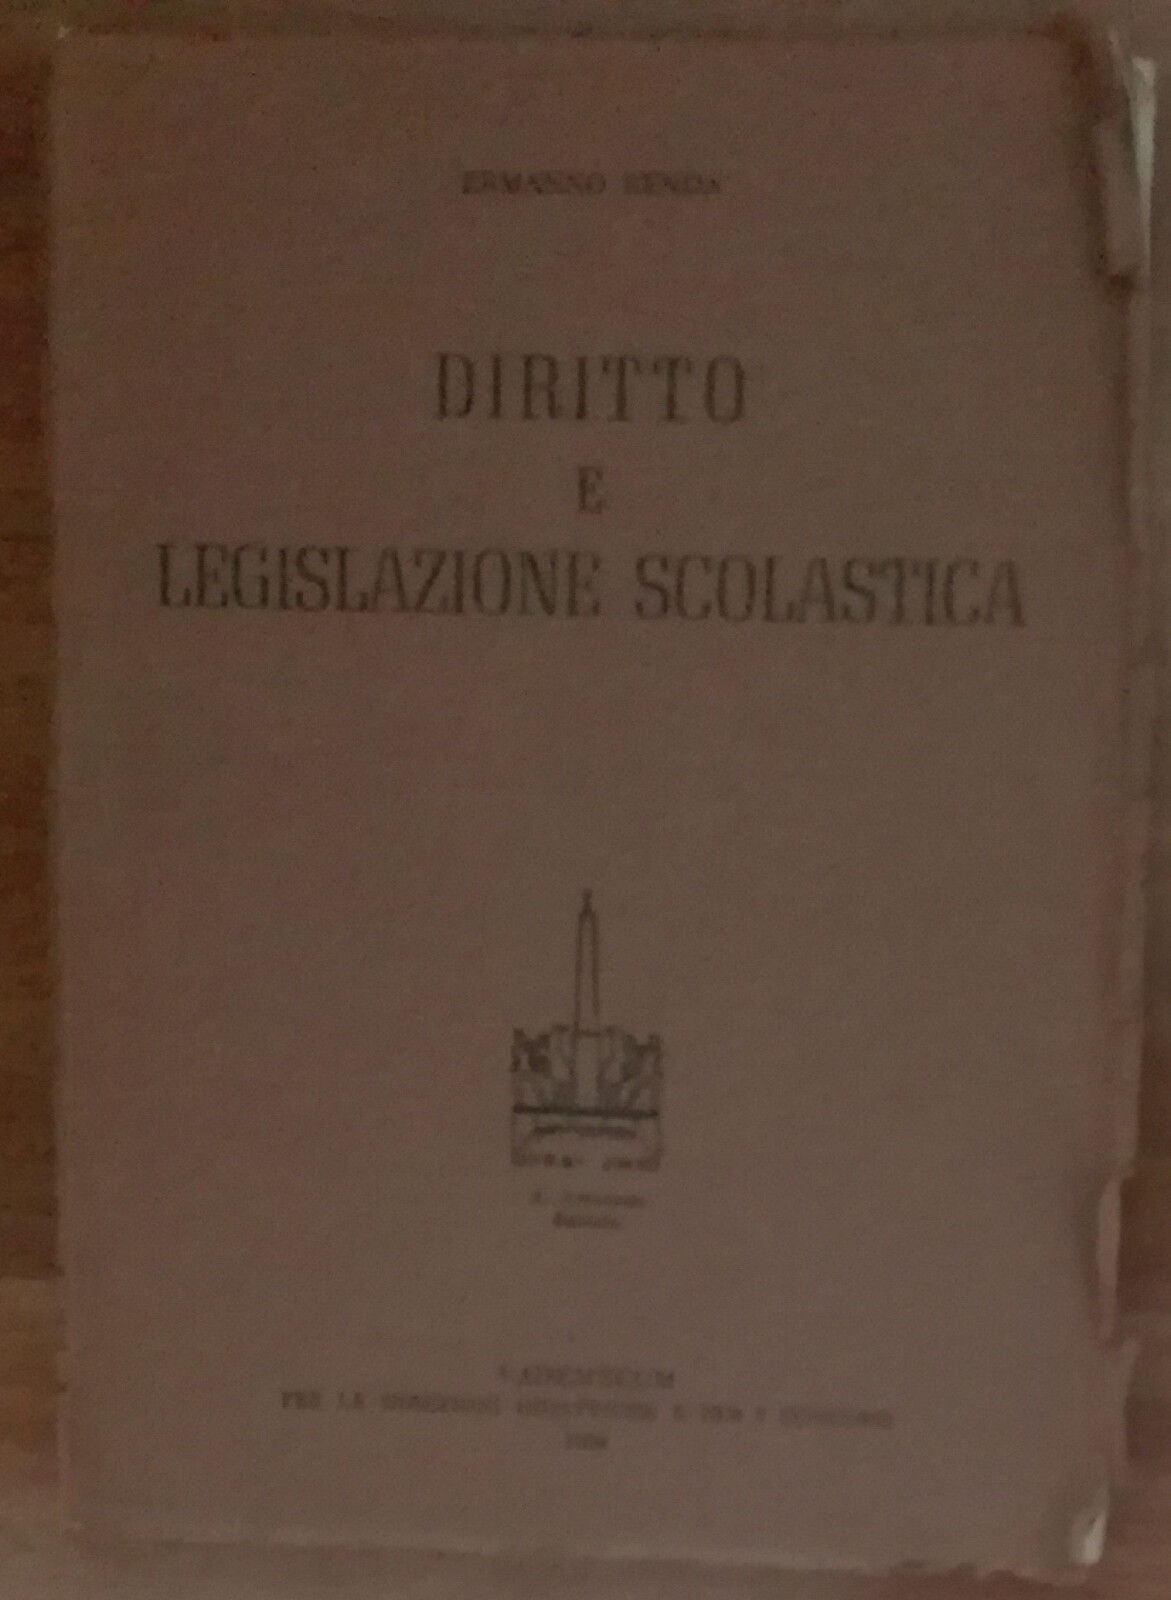 Diritto e legislazione scolastica - Ermanno Renda - A.Armando,1958 - A